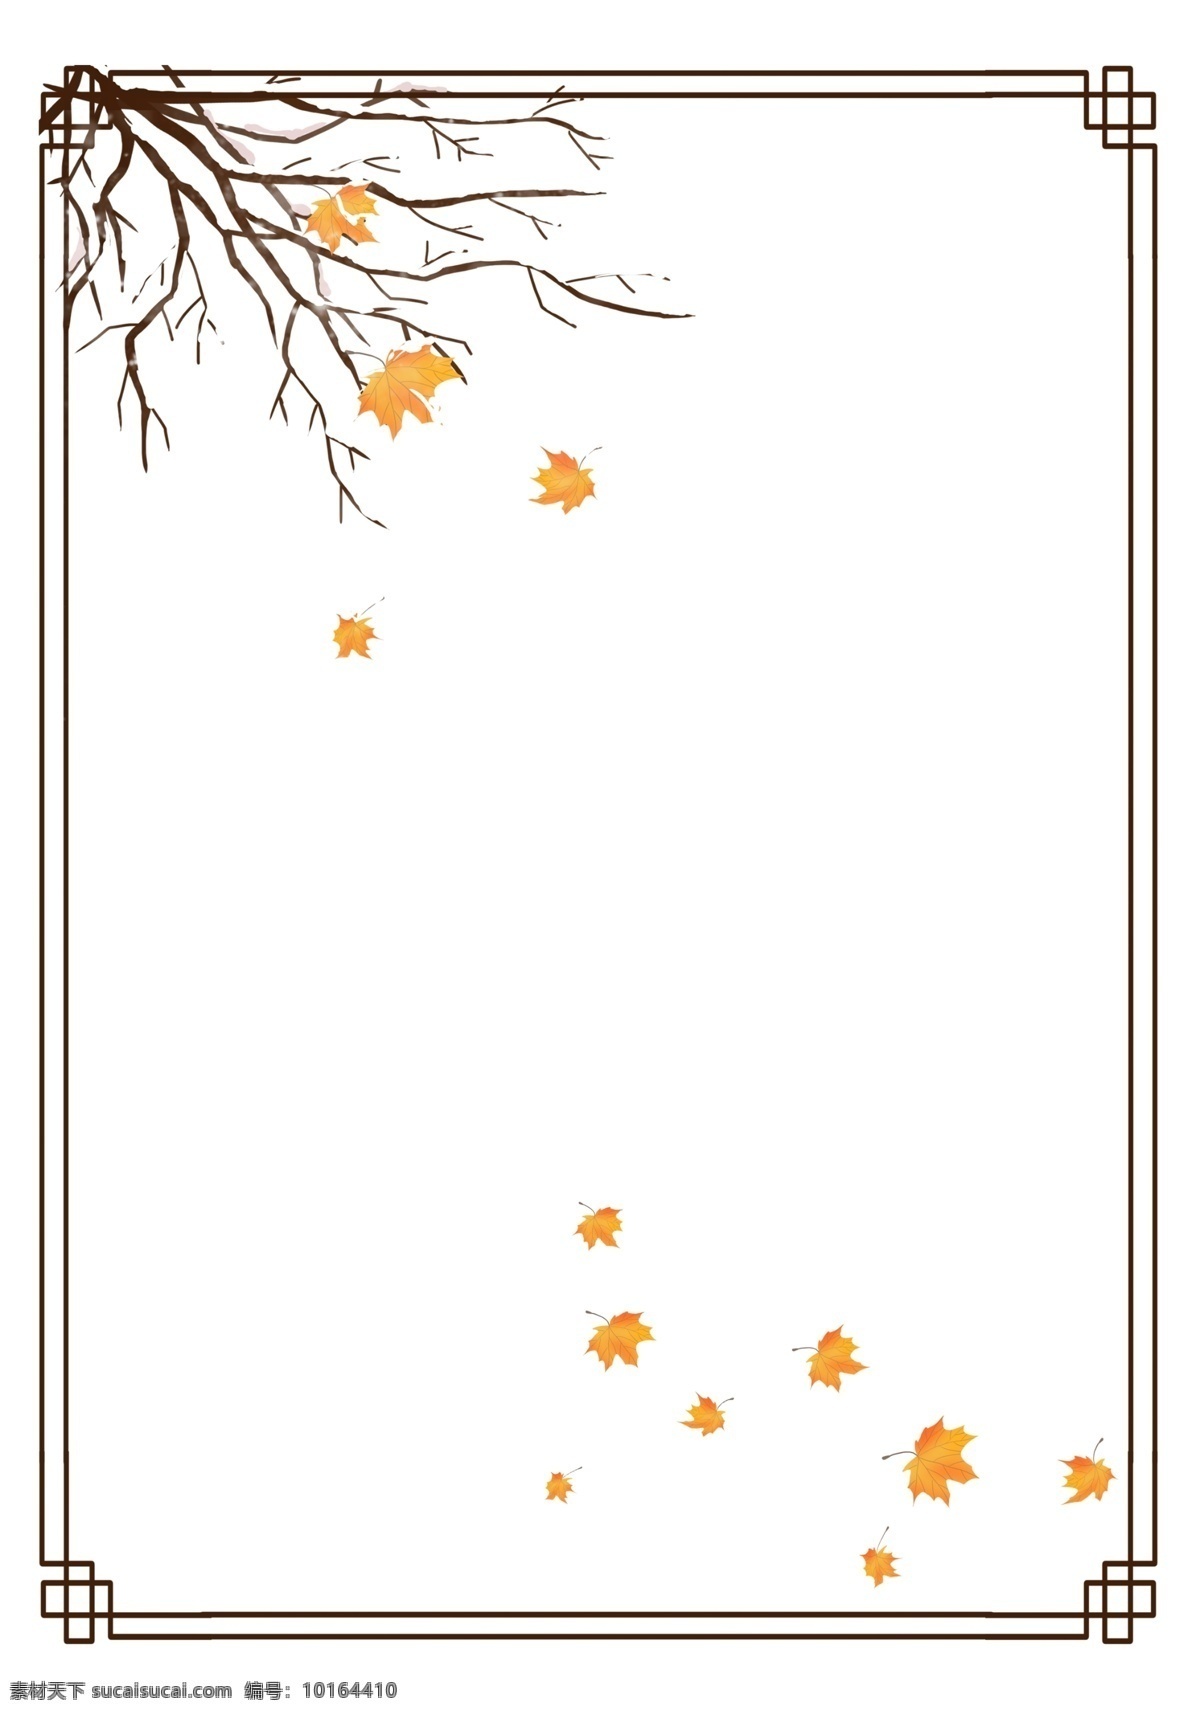 手绘 冬季 树枝 边框 纹理 雪 覆盖 枫叶 落叶 树杈 冬天 飘落的树叶 水墨 国画树枝 复古风树杈 写实 中国风边框